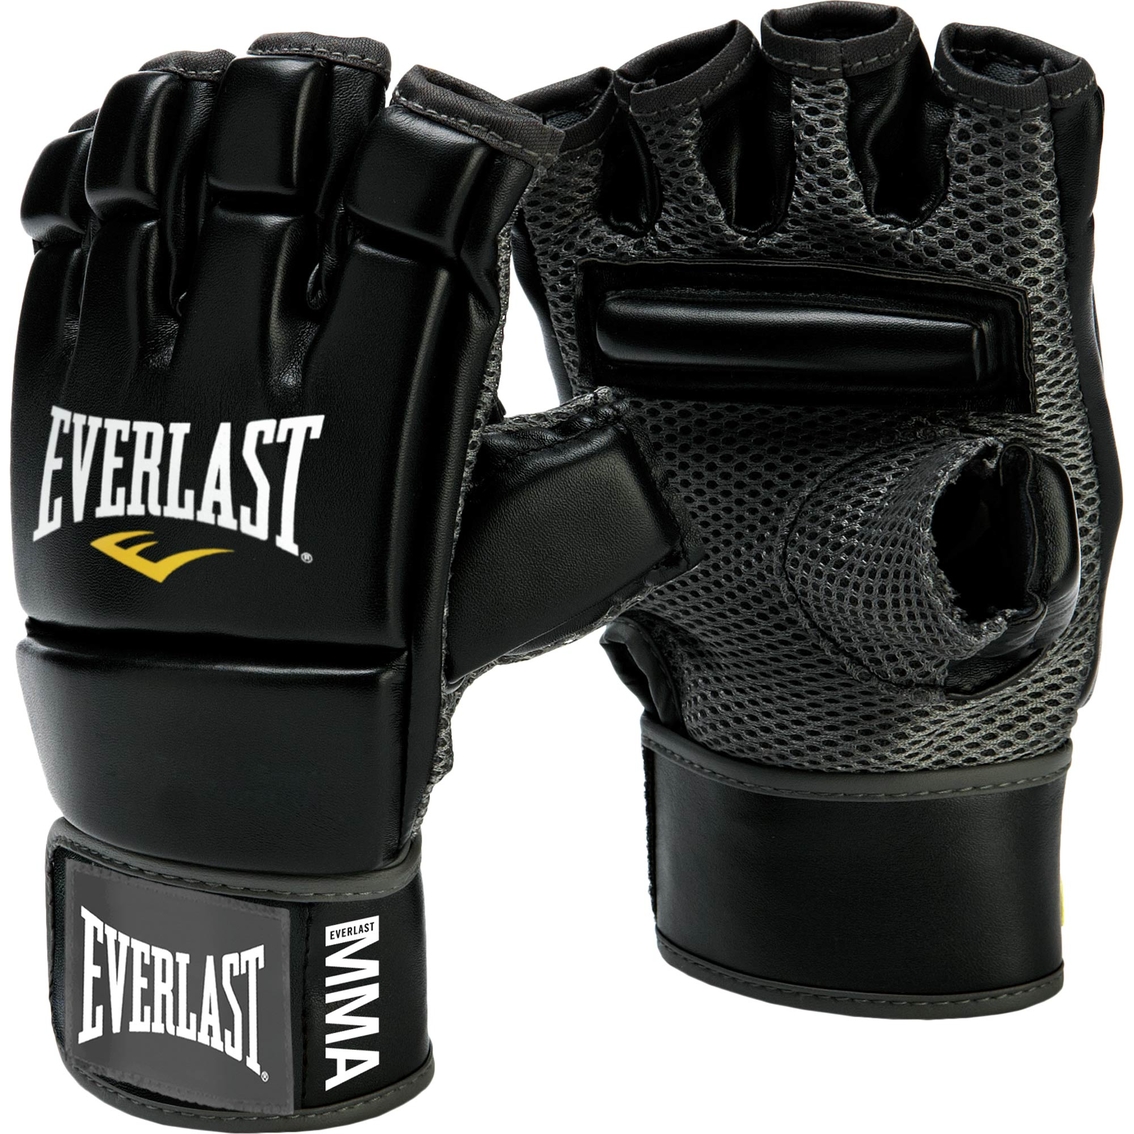 Everlast Kickboxing Gloves